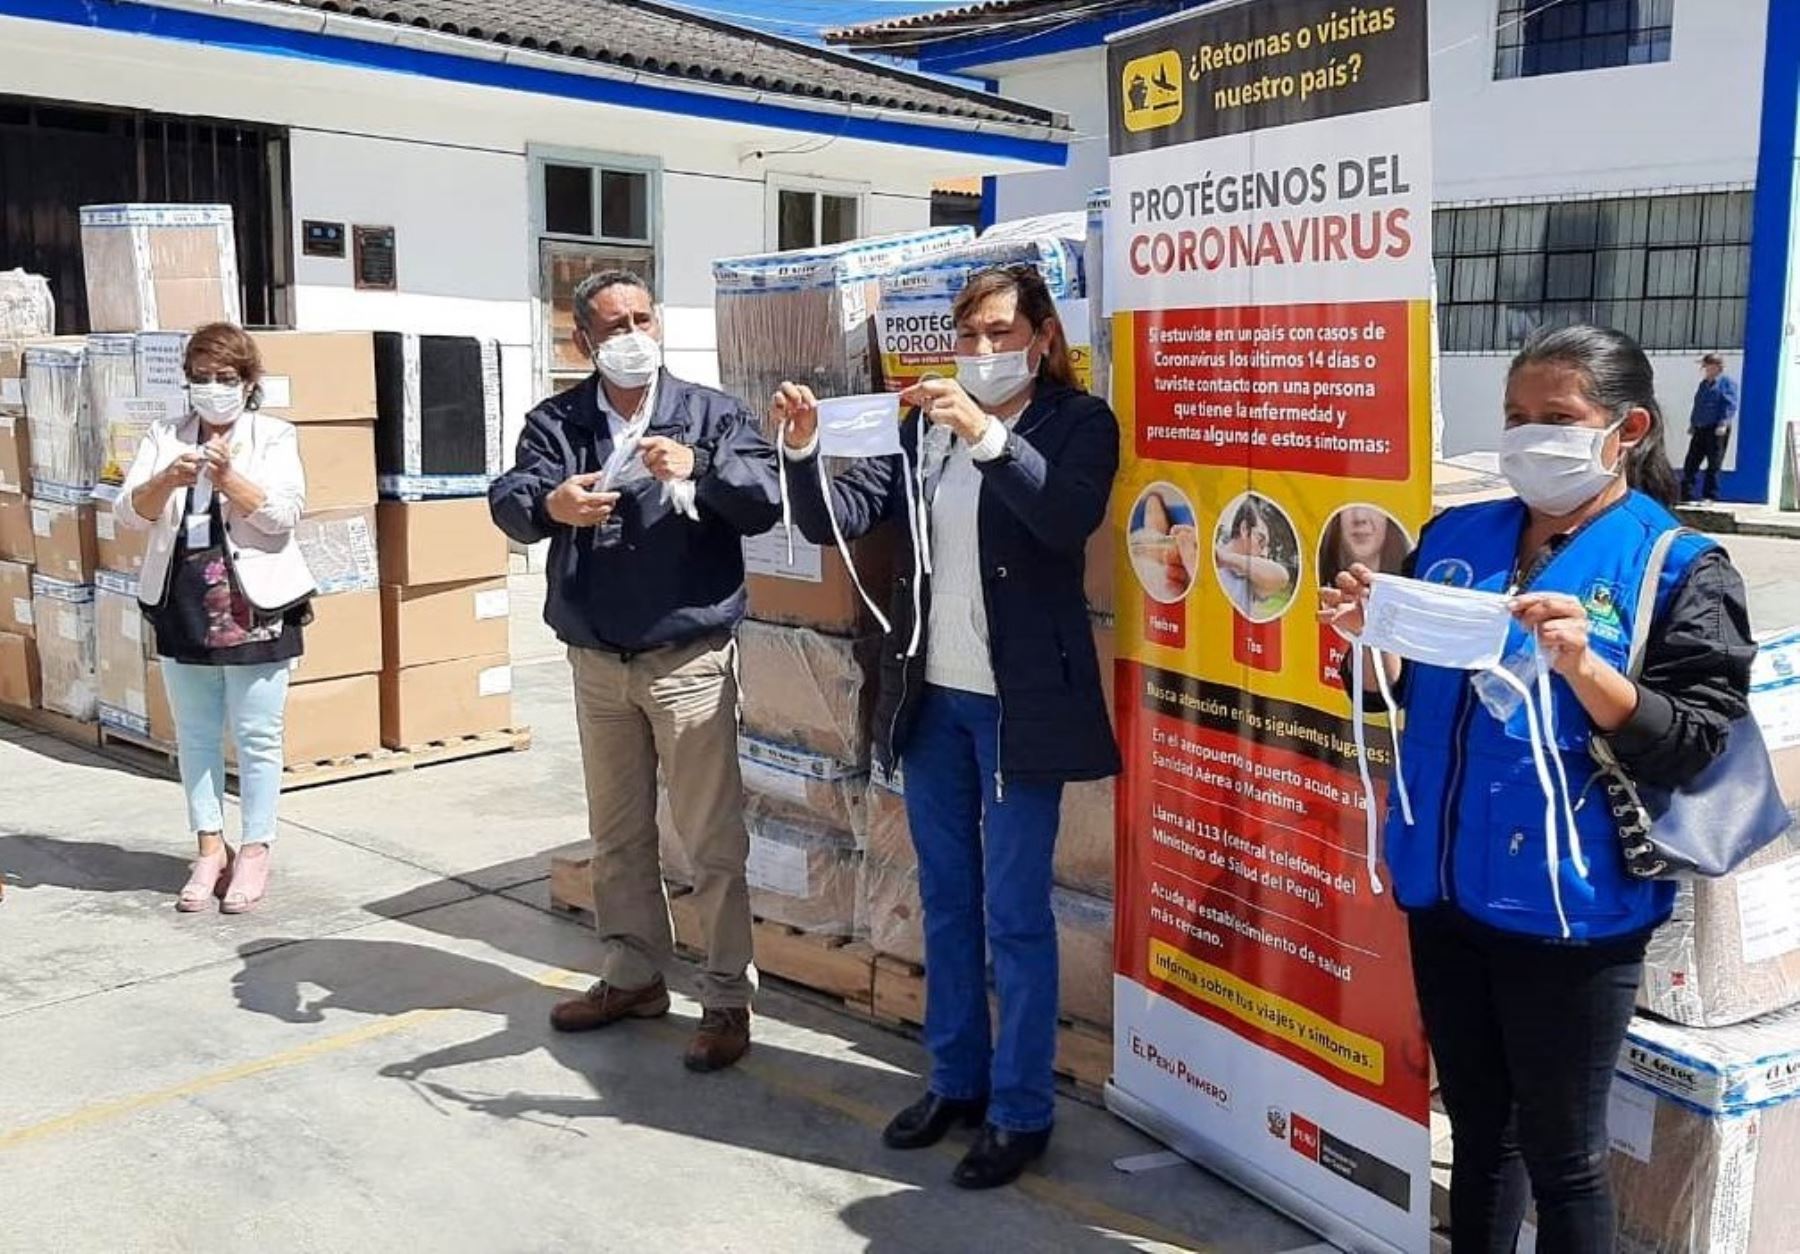 Cajamarca distribuirá 100,000 mascarillas para las personas vulnerables que fueron entregadas por el Ministerio de Salud para evitar la propagación del coronavirus. ANDINA/Difusión